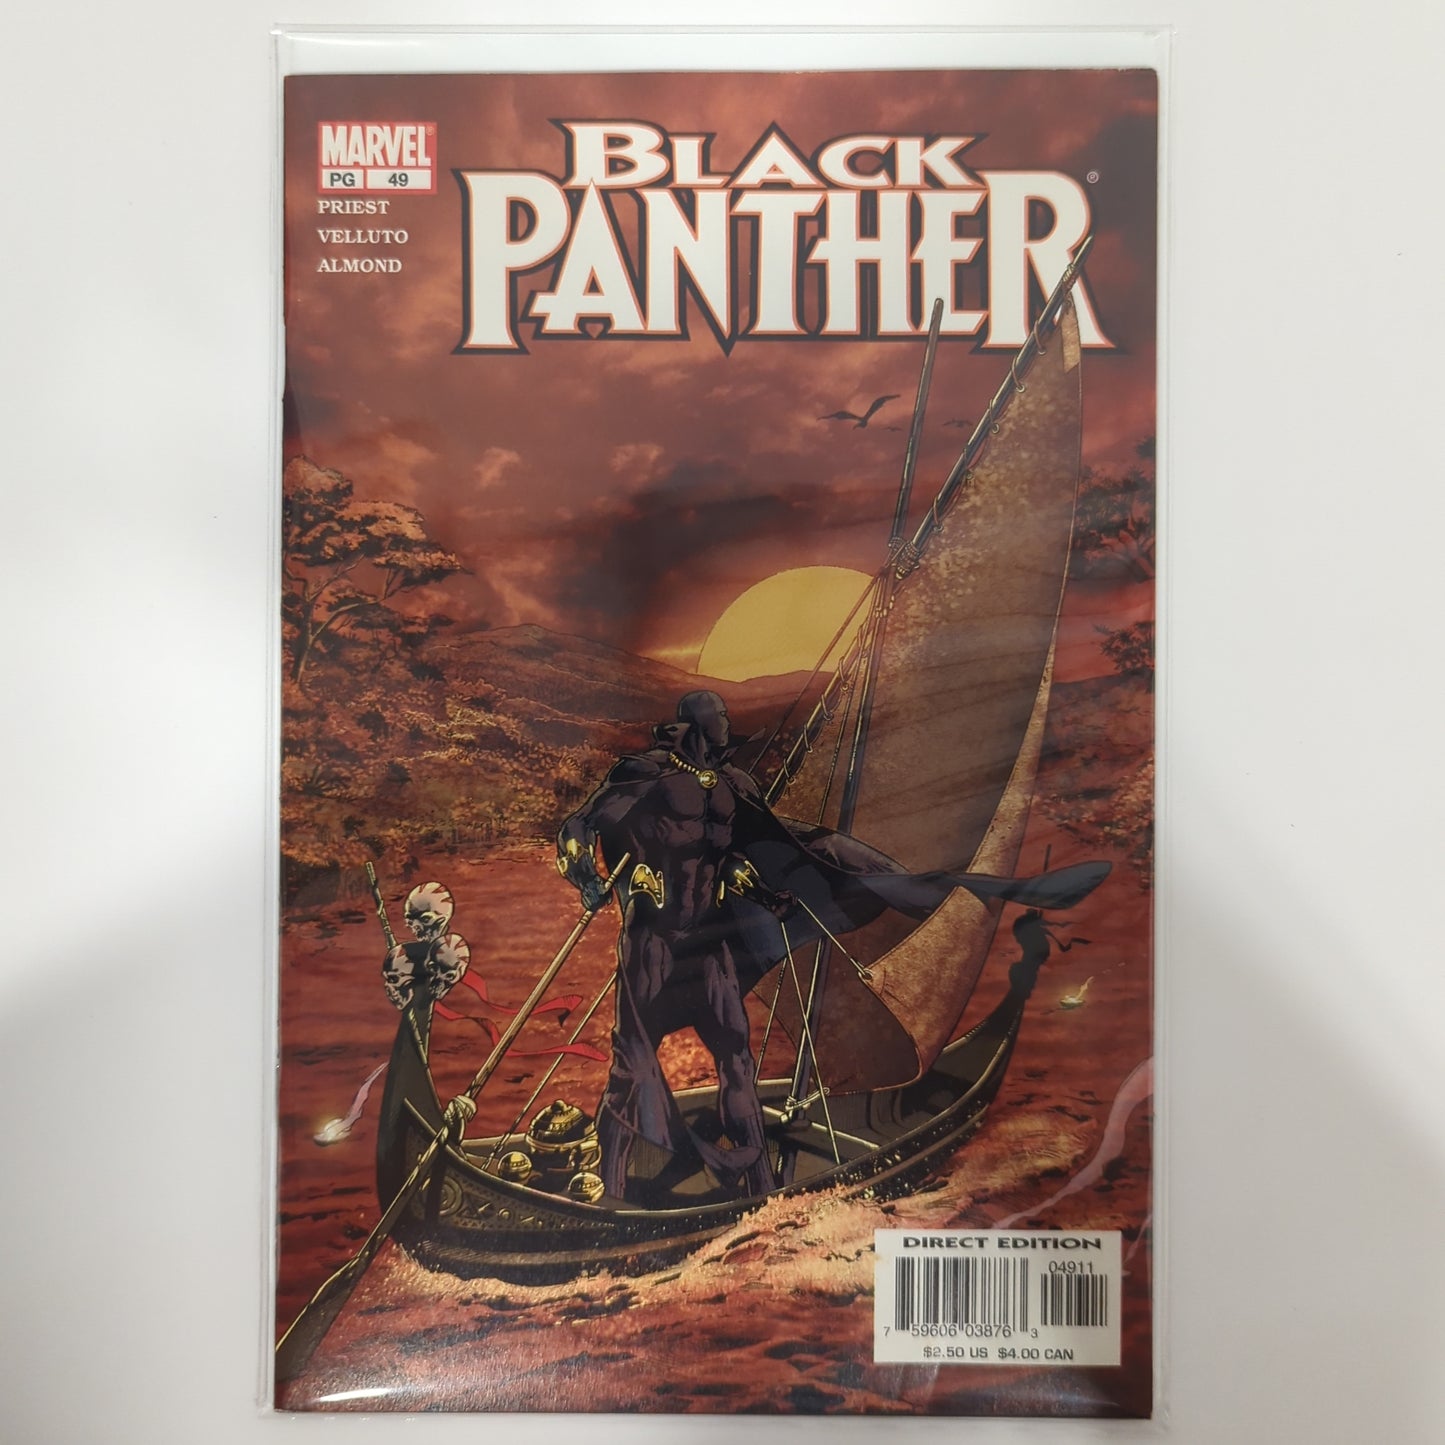 Black Panther #49